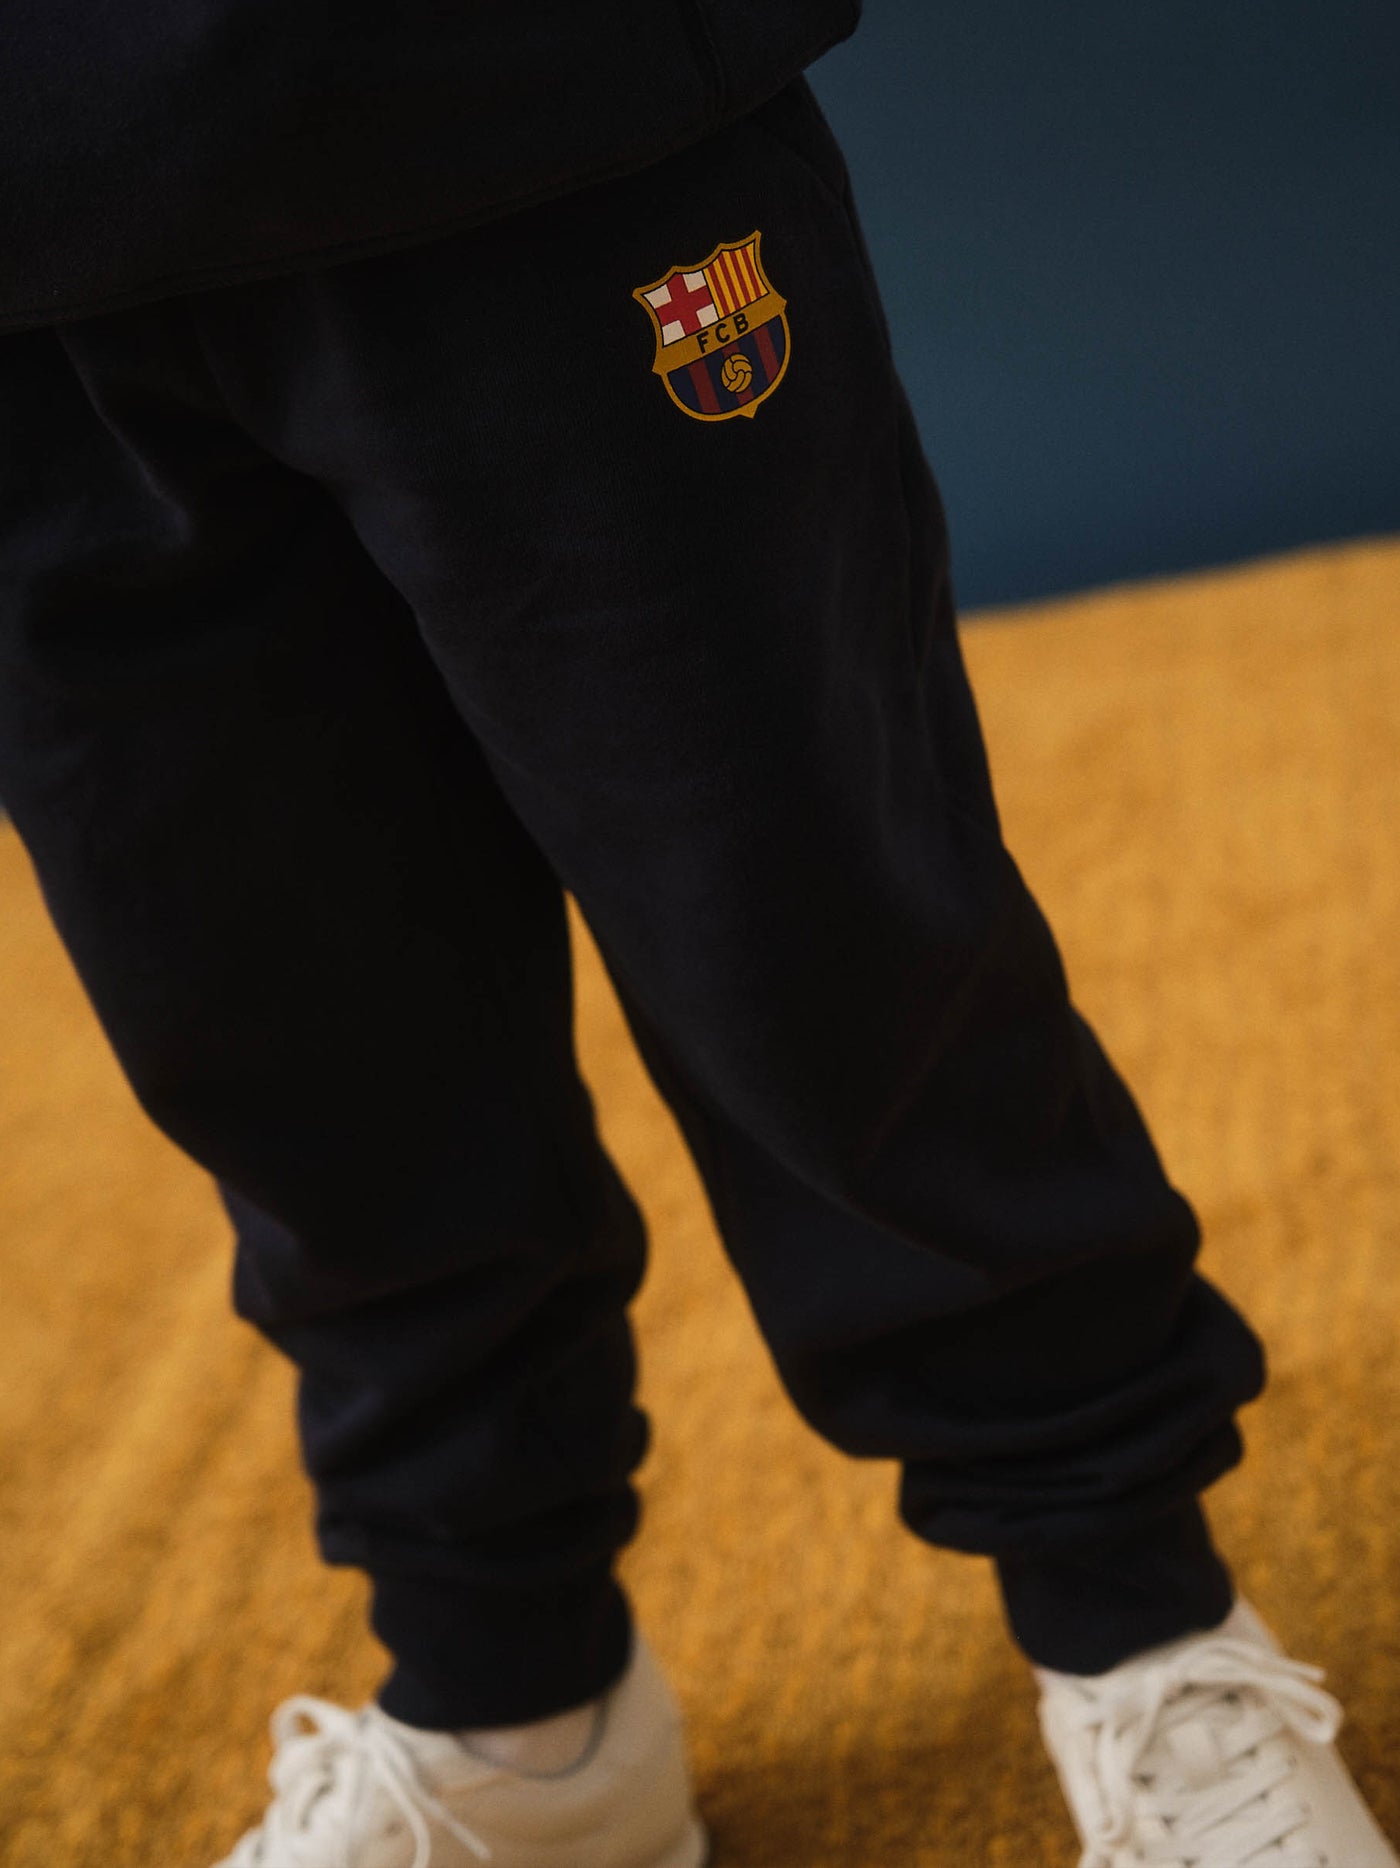 Pantalón largo de chándal escudo Barça - Junior